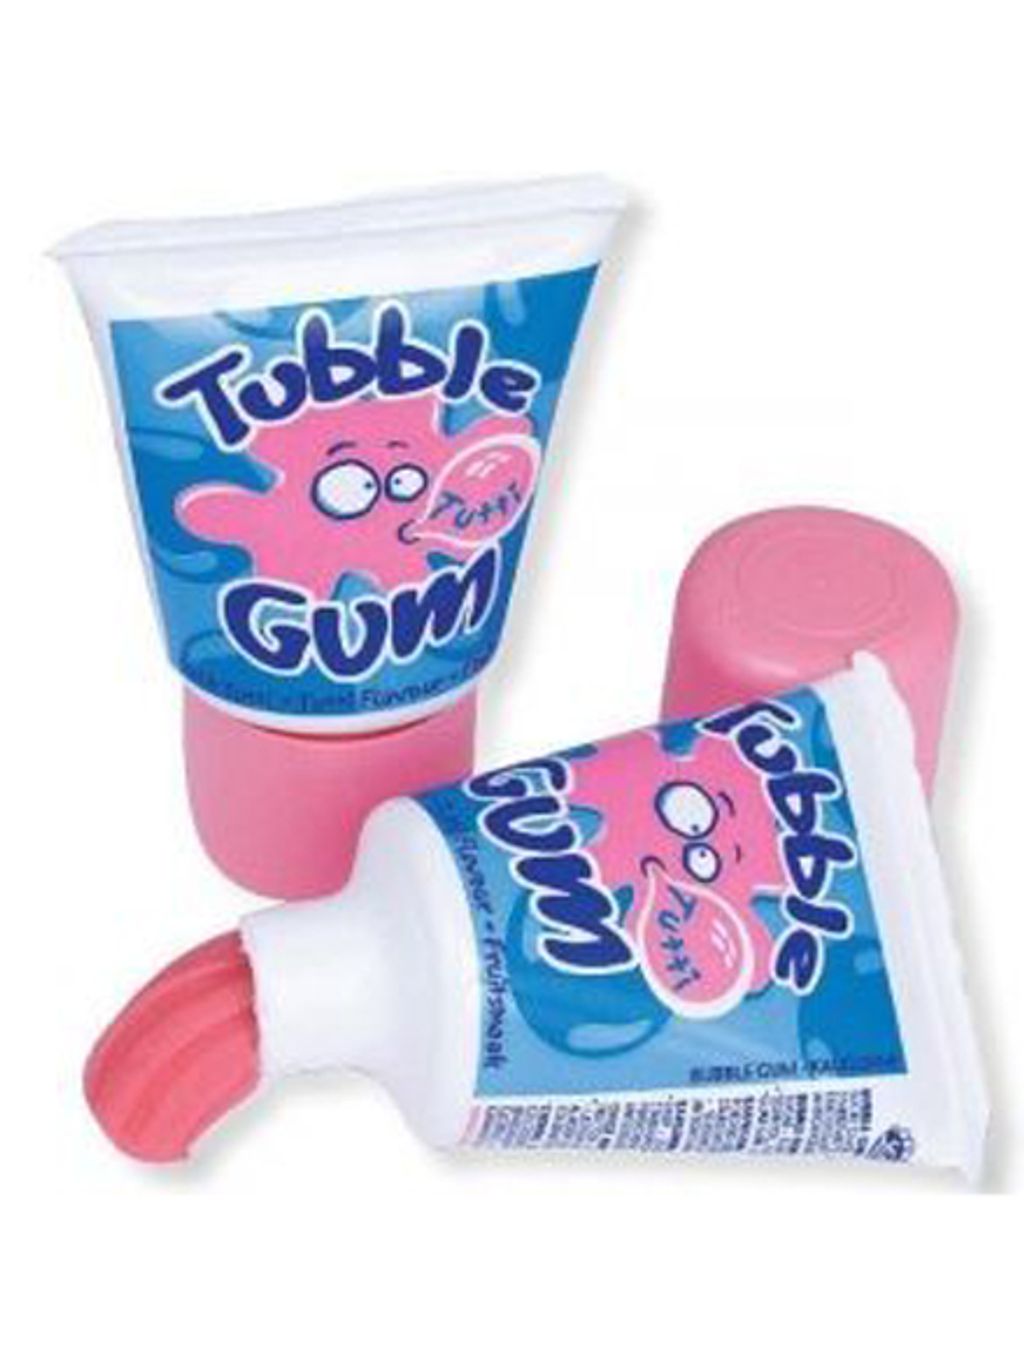 Tubble Gum tubusos rágógumi
80-as évek népszerű termékei 